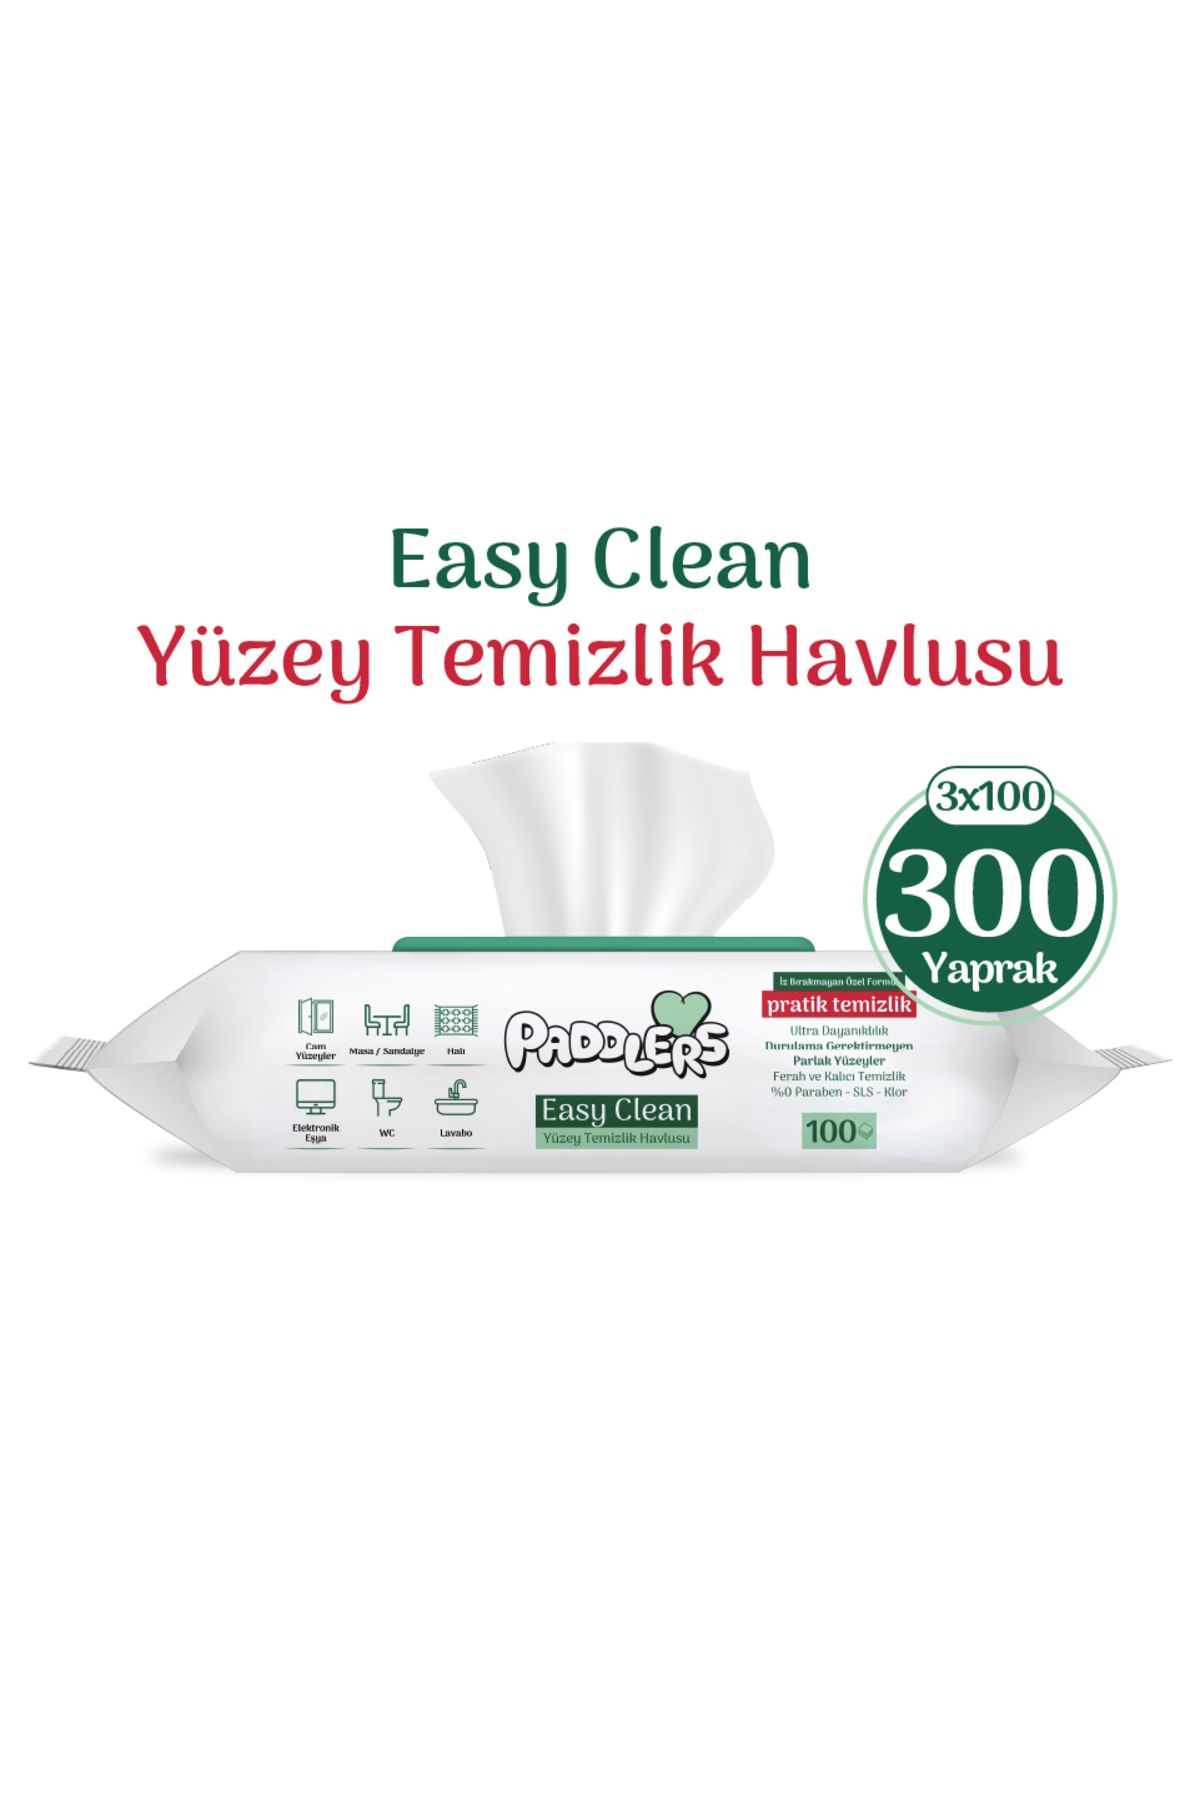 Paddlers Easy Clean Beyaz Sabun Katkılı Yüzey Temizlik Havlusu 3x100 (300 Yaprak)